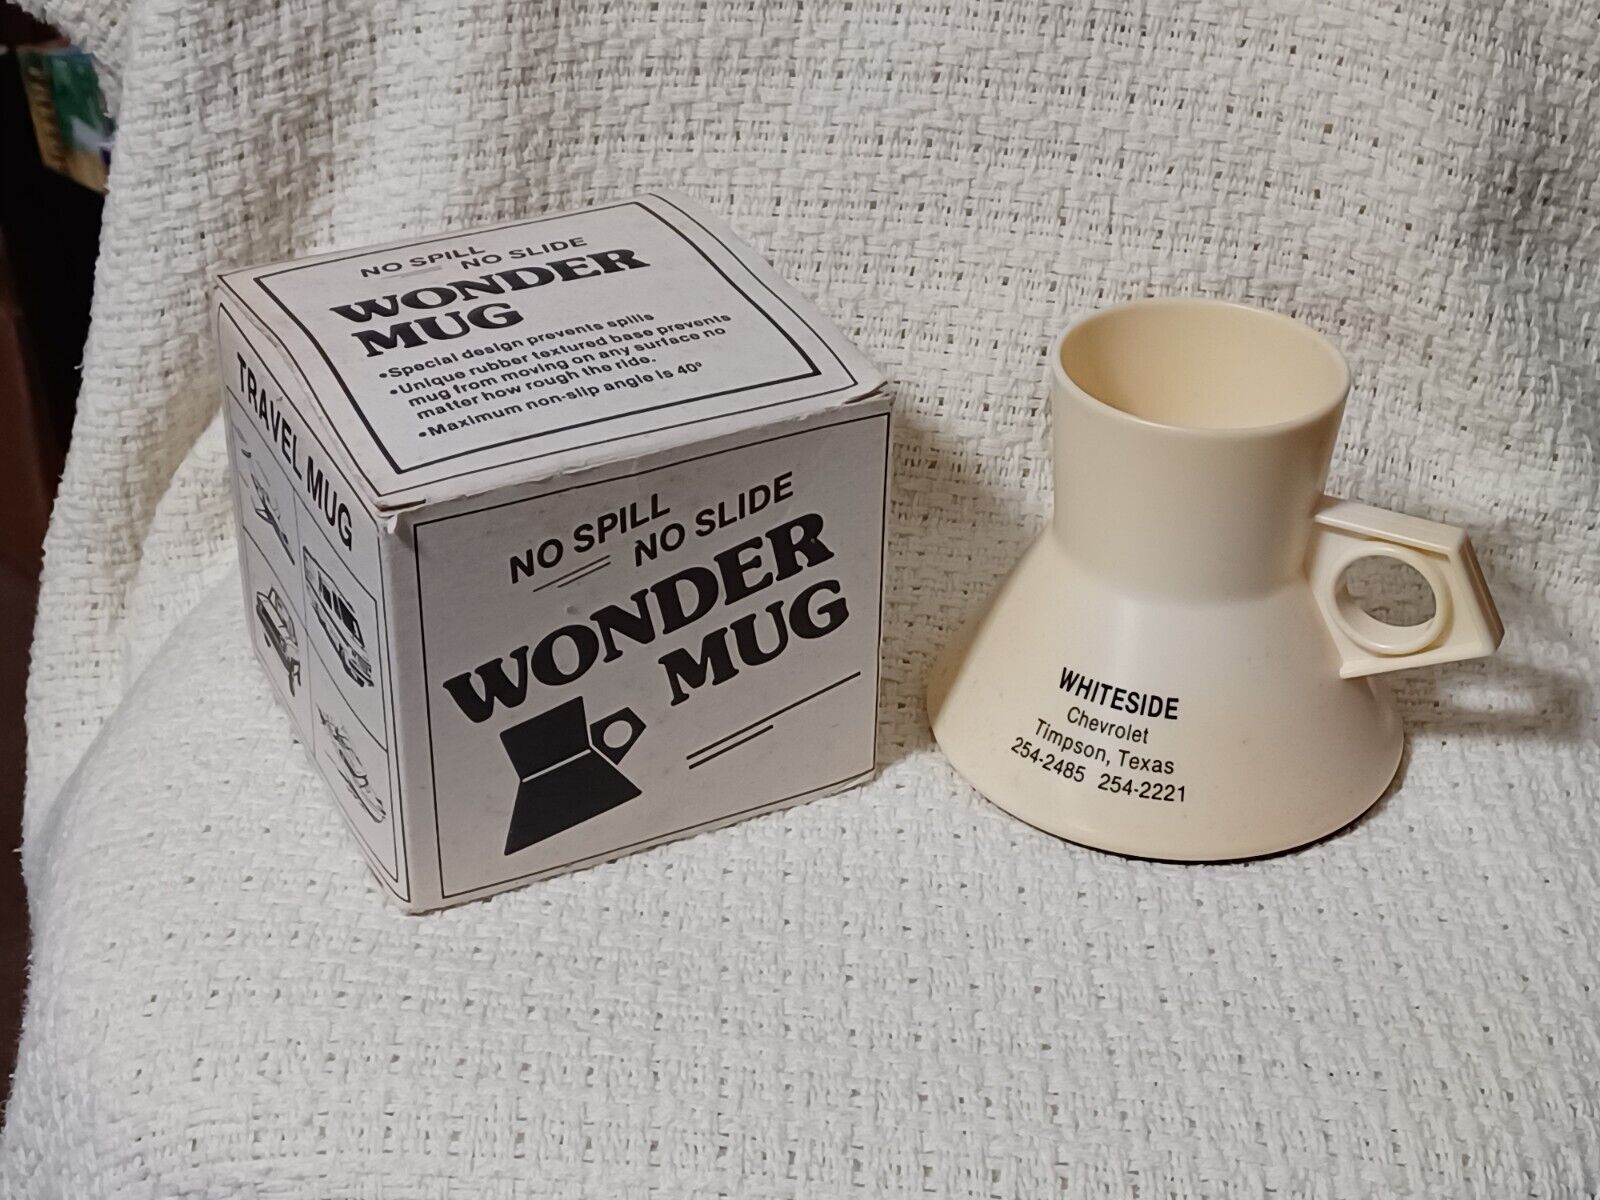 Whiteside Chevrolet Wonder Mug NOS In Original Box